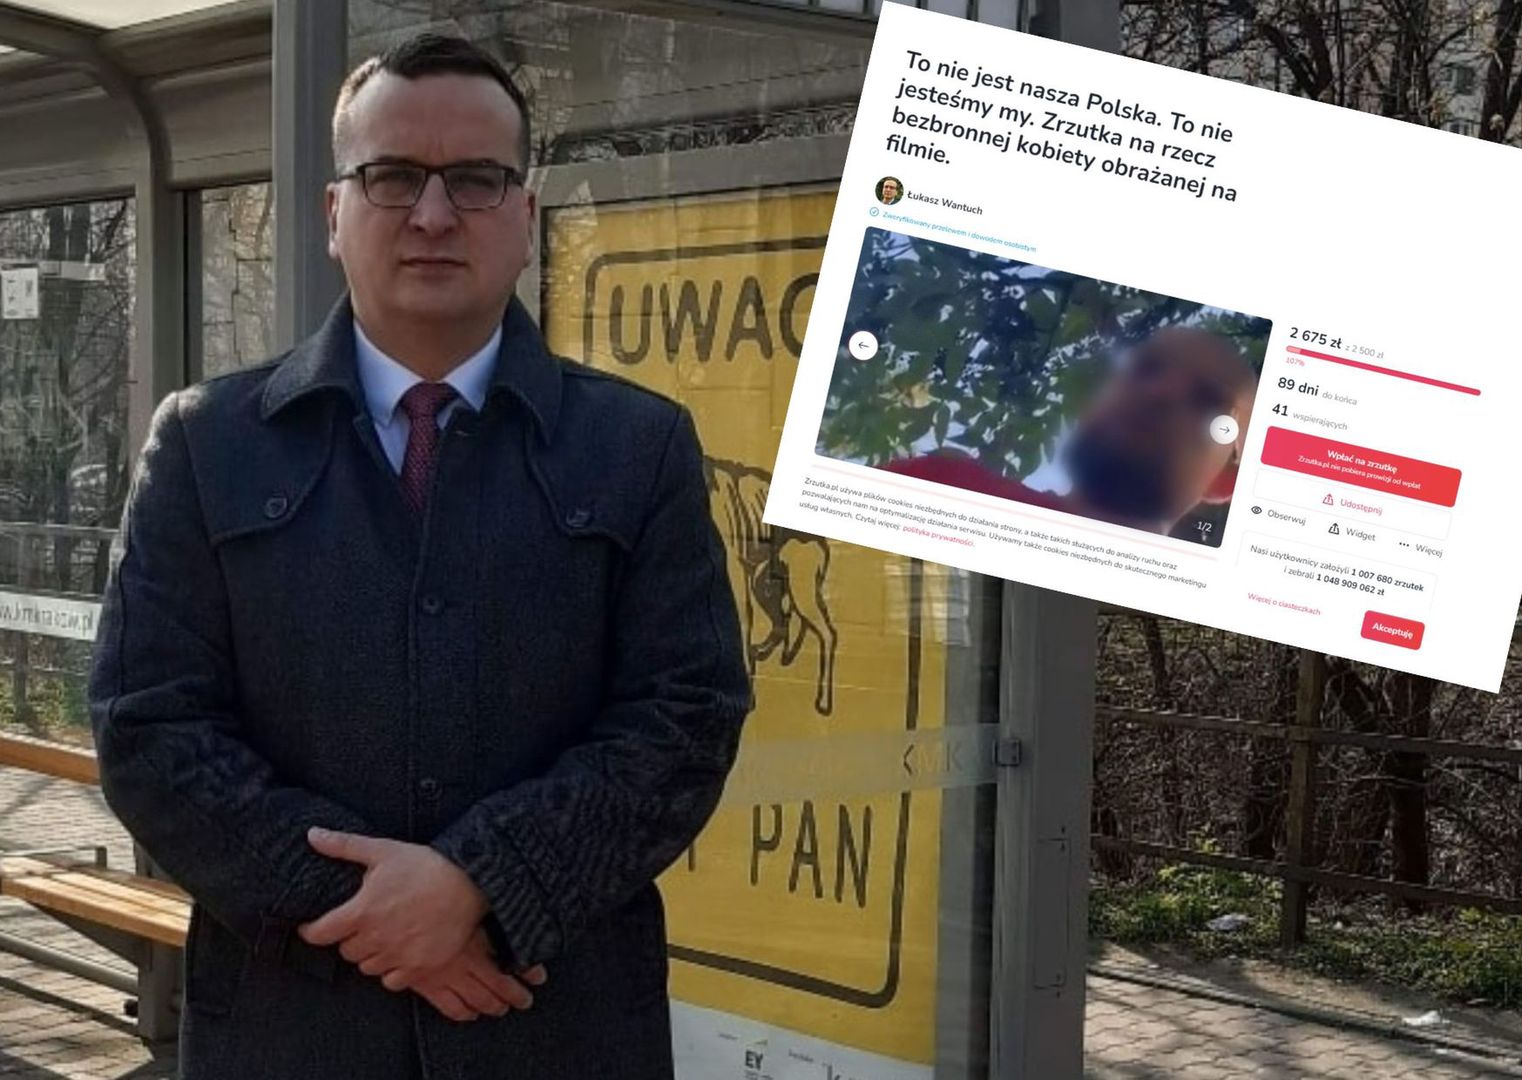 Mężczyzna upokorzył Ukrainkę i jej dzieci. Teraz chce przepraszać. Krakowski radny zapowiada pozew cywilny